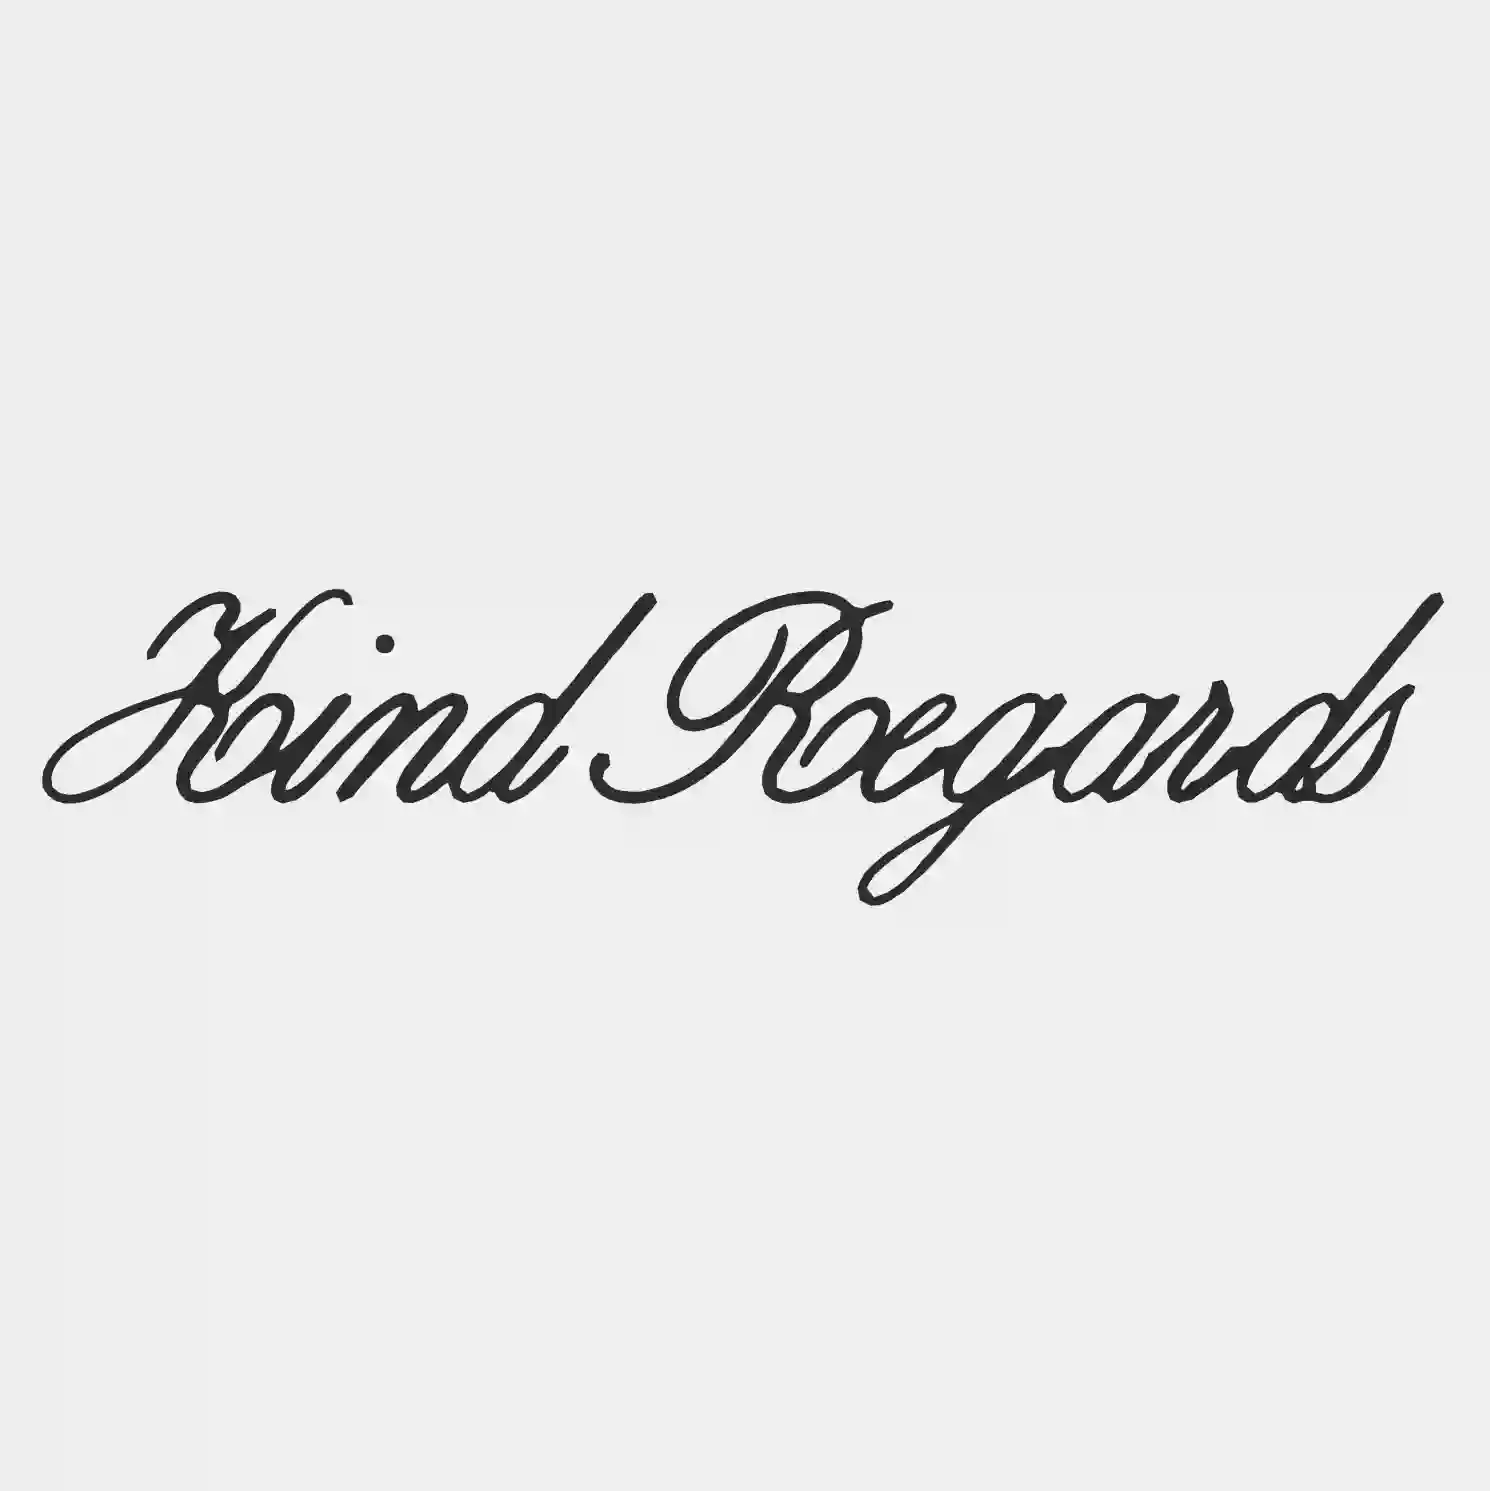 Kind Regards